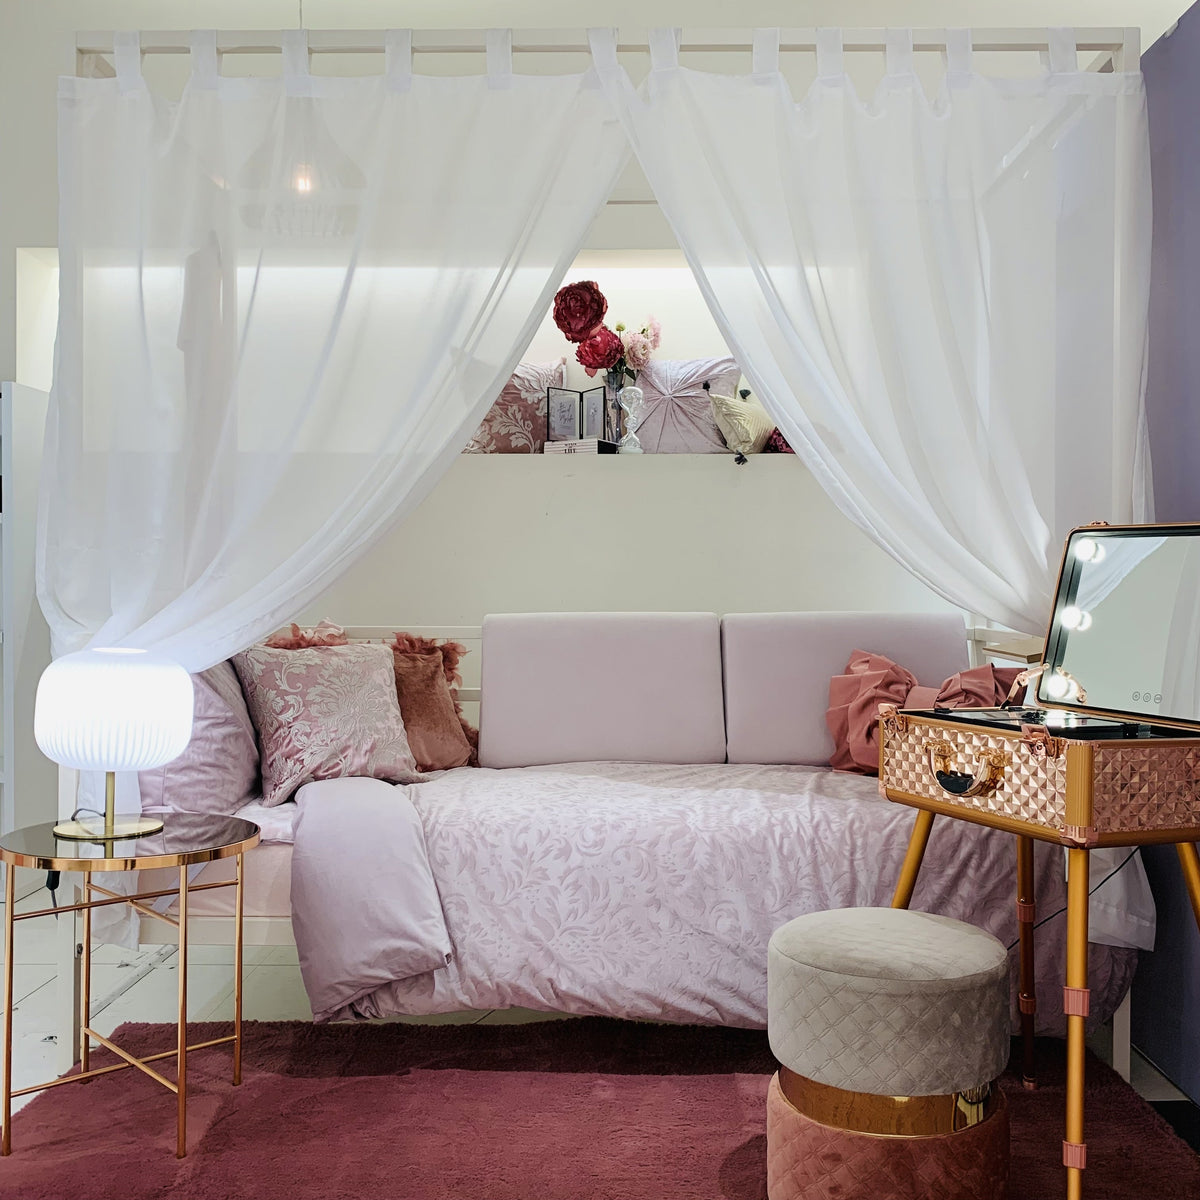 憧れの天蓋ベッドでお姫様のような雰囲気の寝室 | Francfranc